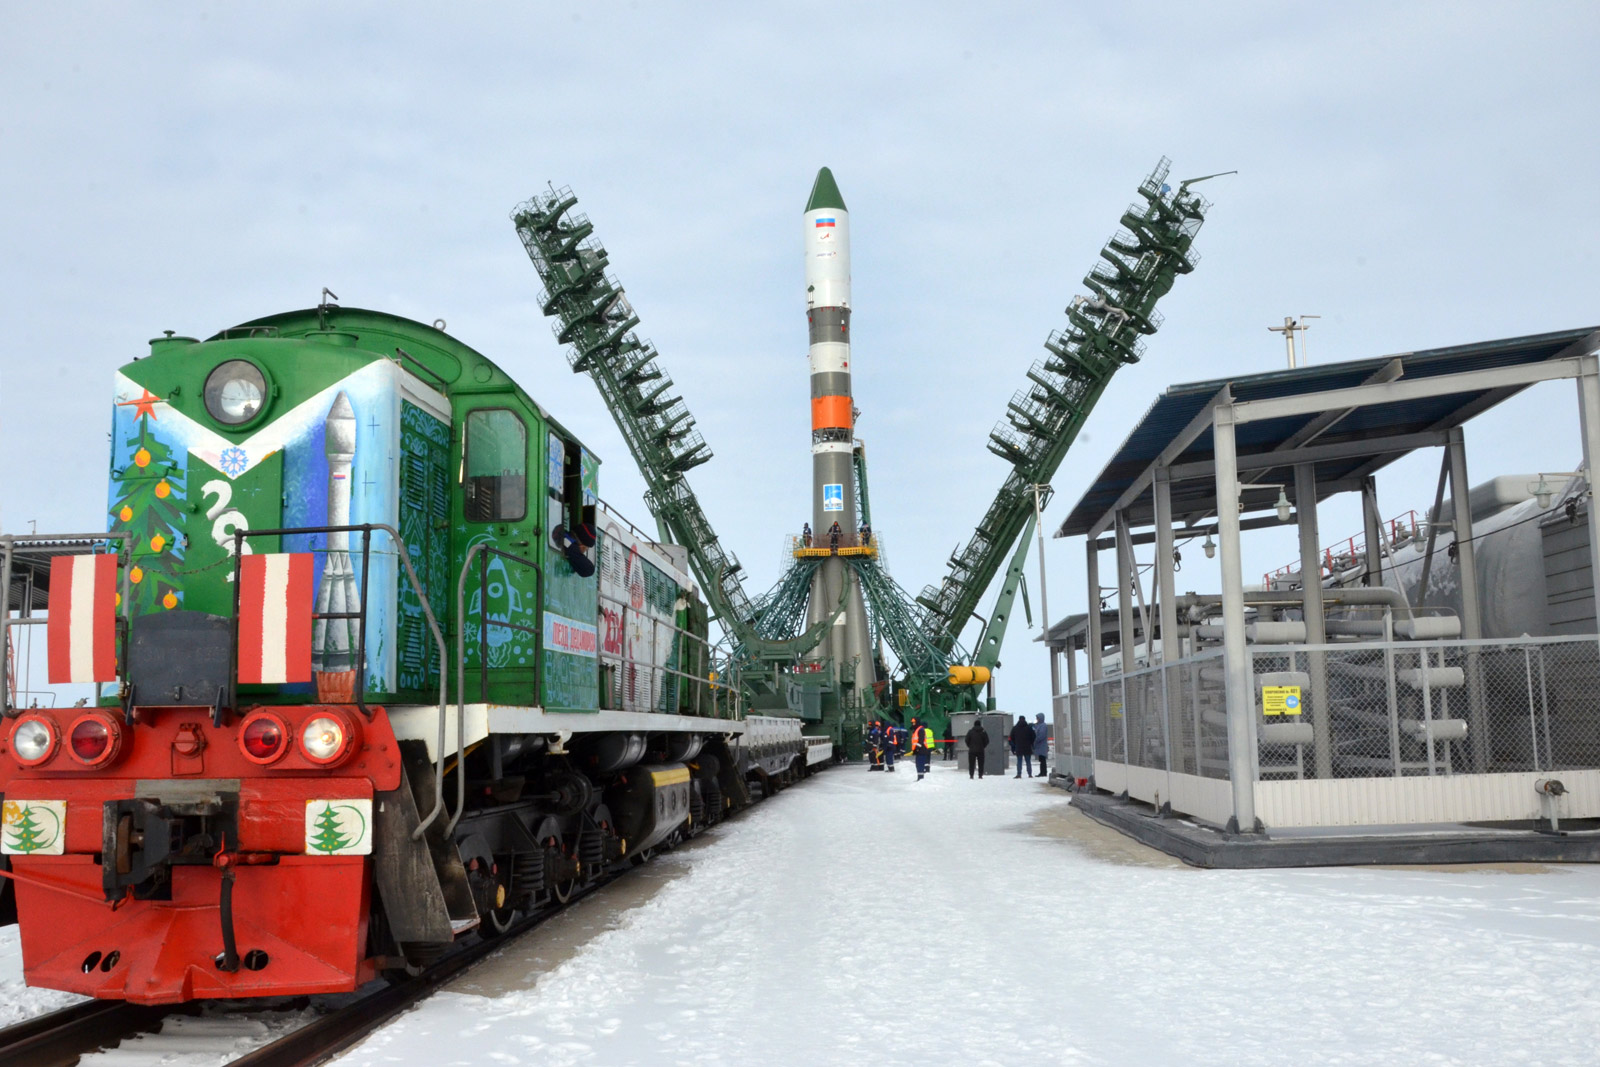 Ракета с транспортным грузовым кораблем «Прогресс МС-26» установлена на старте